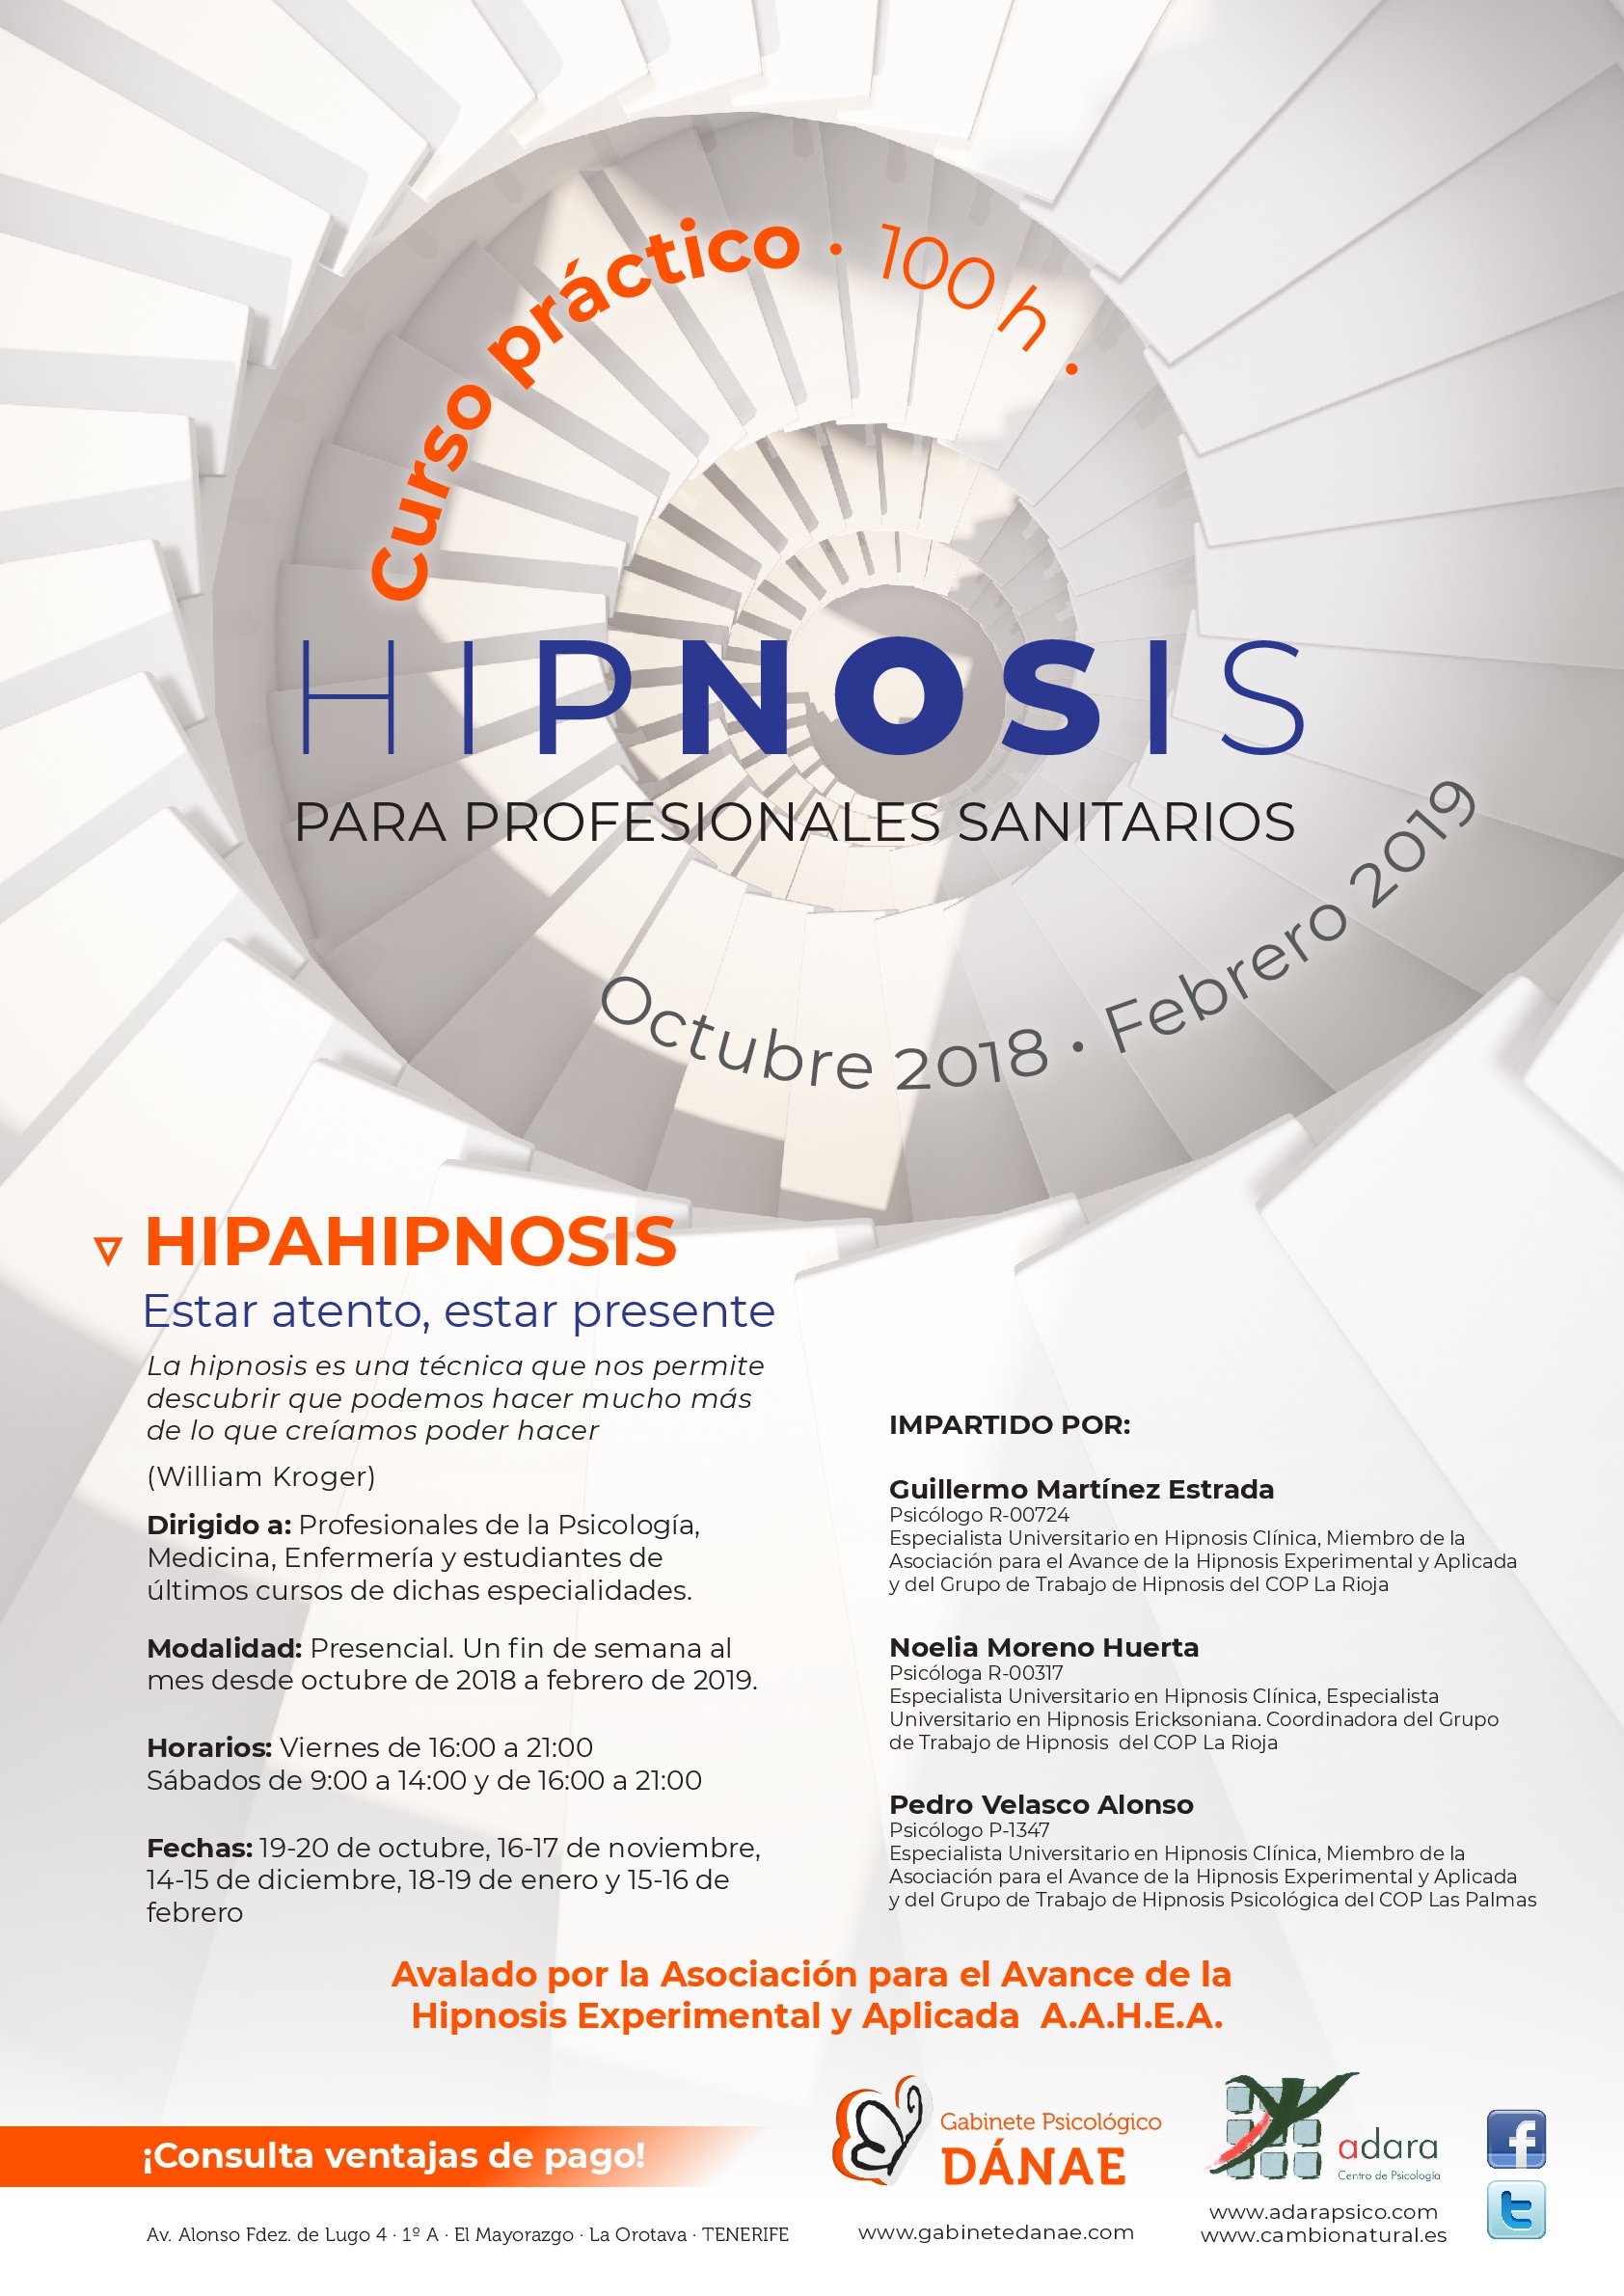 Curso práctico Hipnosis clínica: Hipahipnosis – Tenerife y Logroño 2018-19